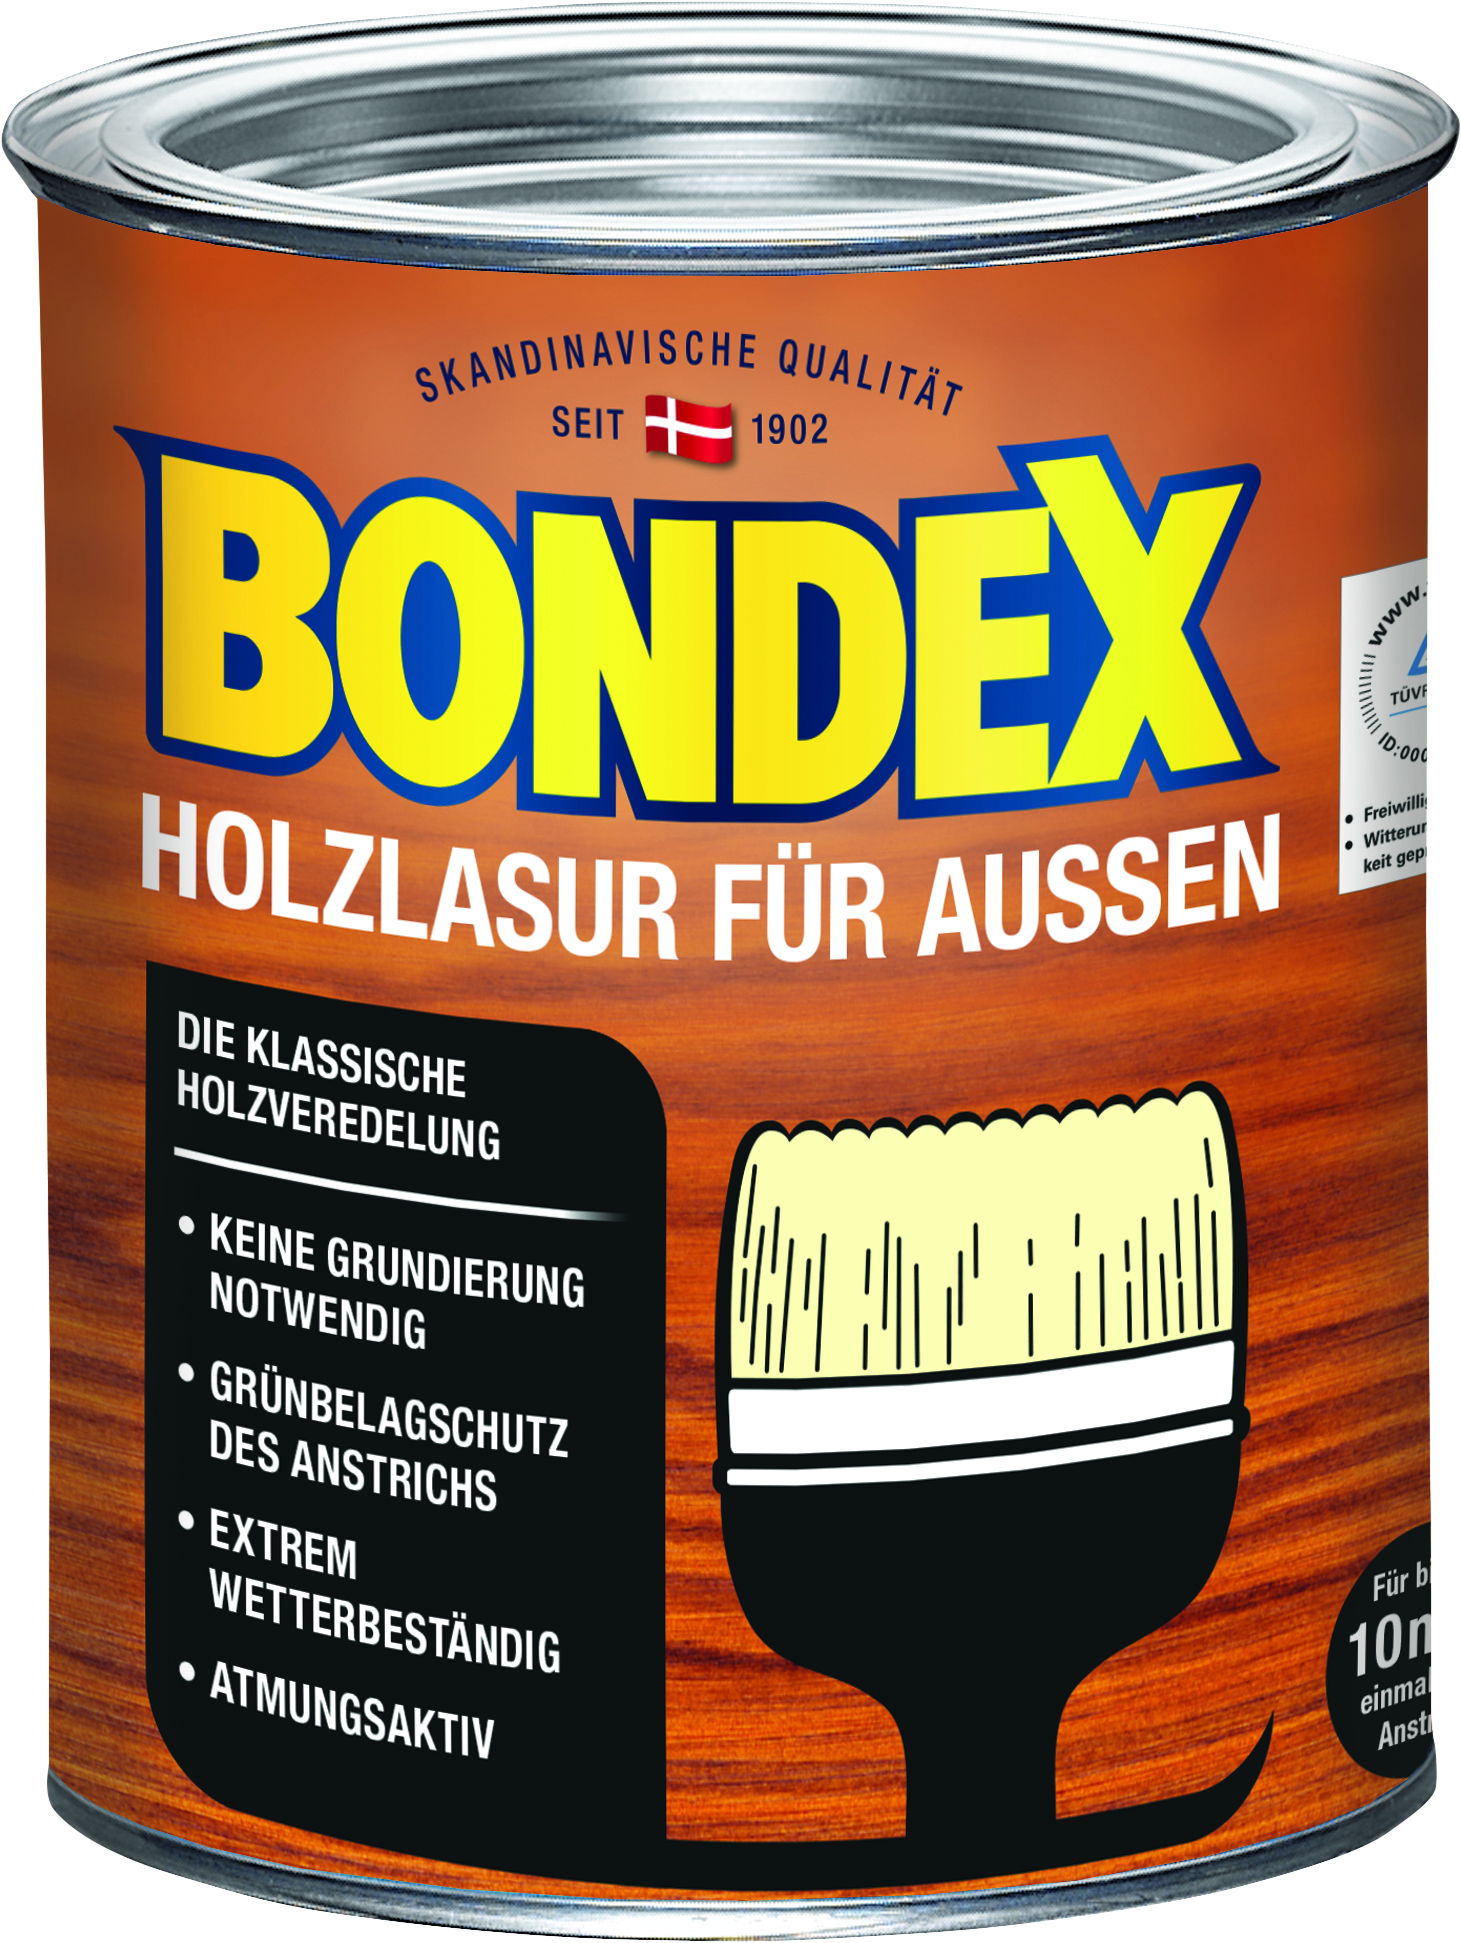 Bondex Holzlasur für Außen Farblos, 750ml